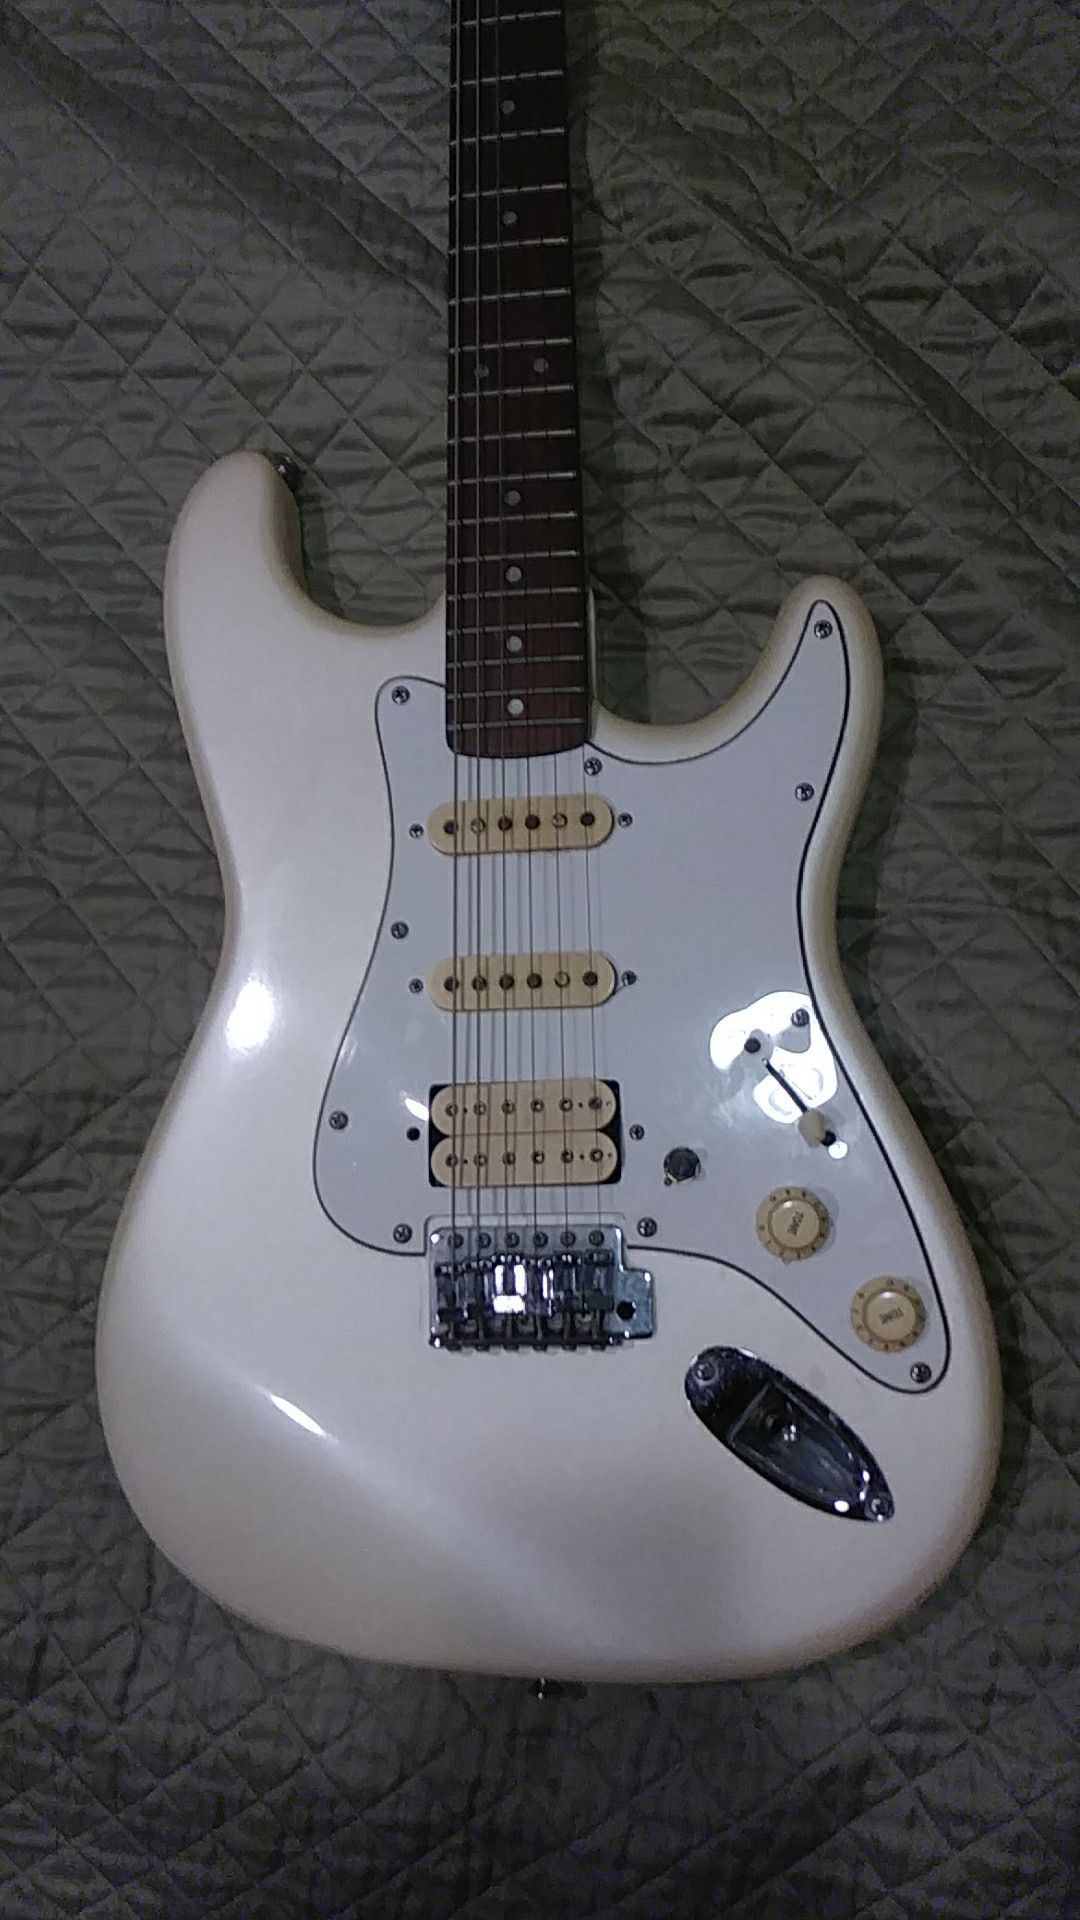 Fender stratocaster